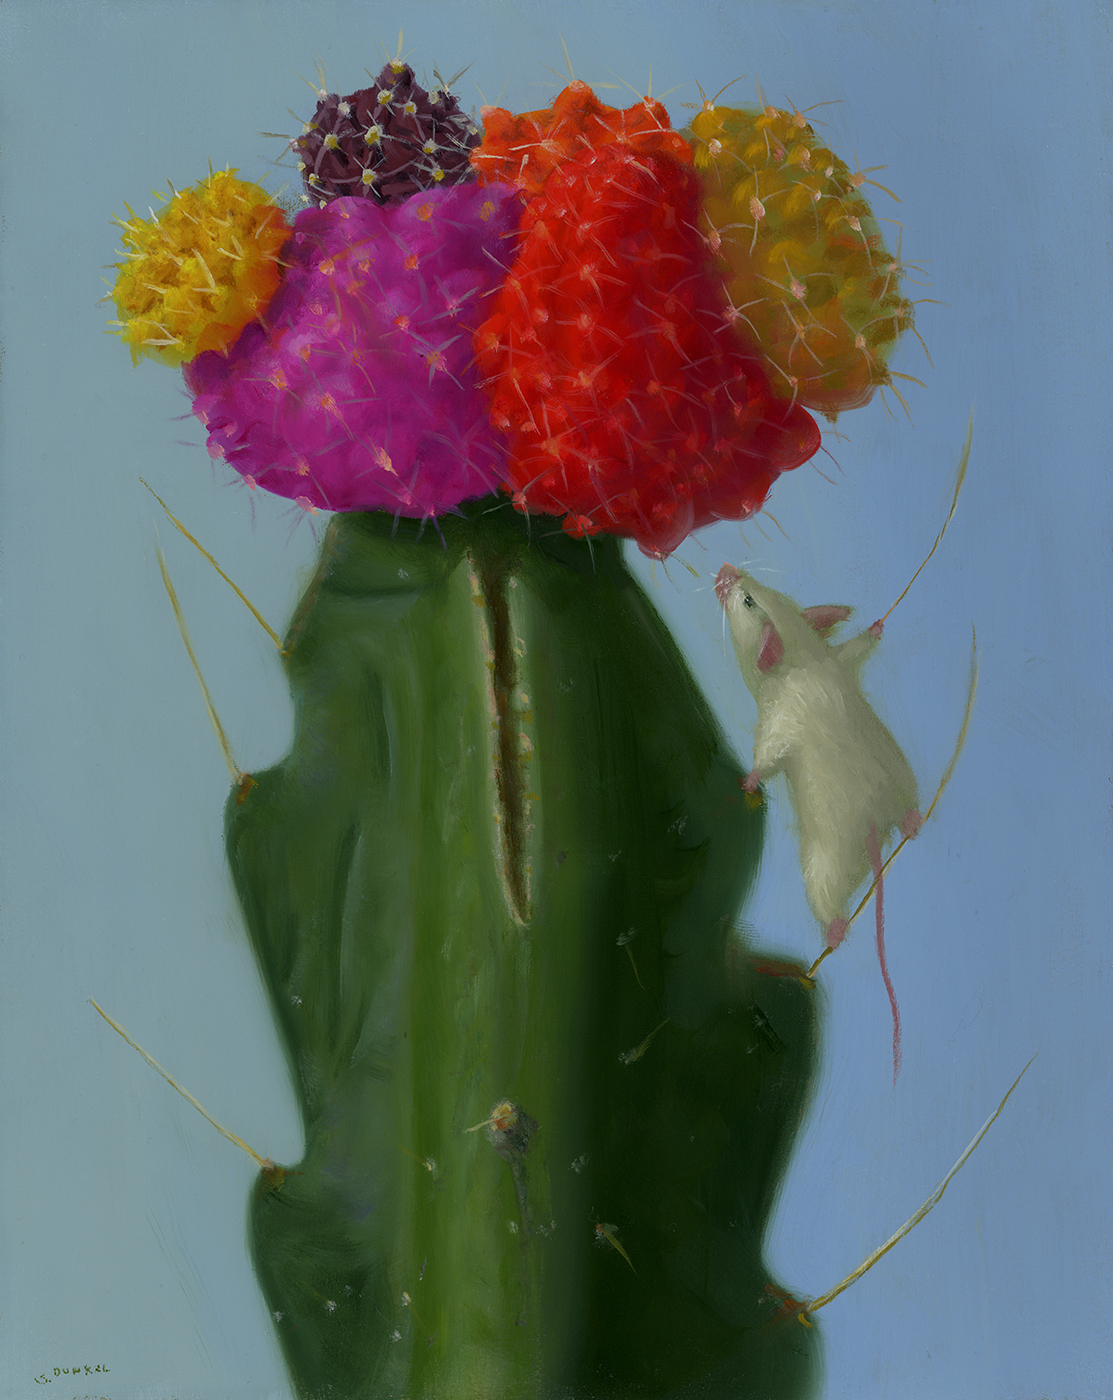 Cactus Climber - Dunkel Stuart